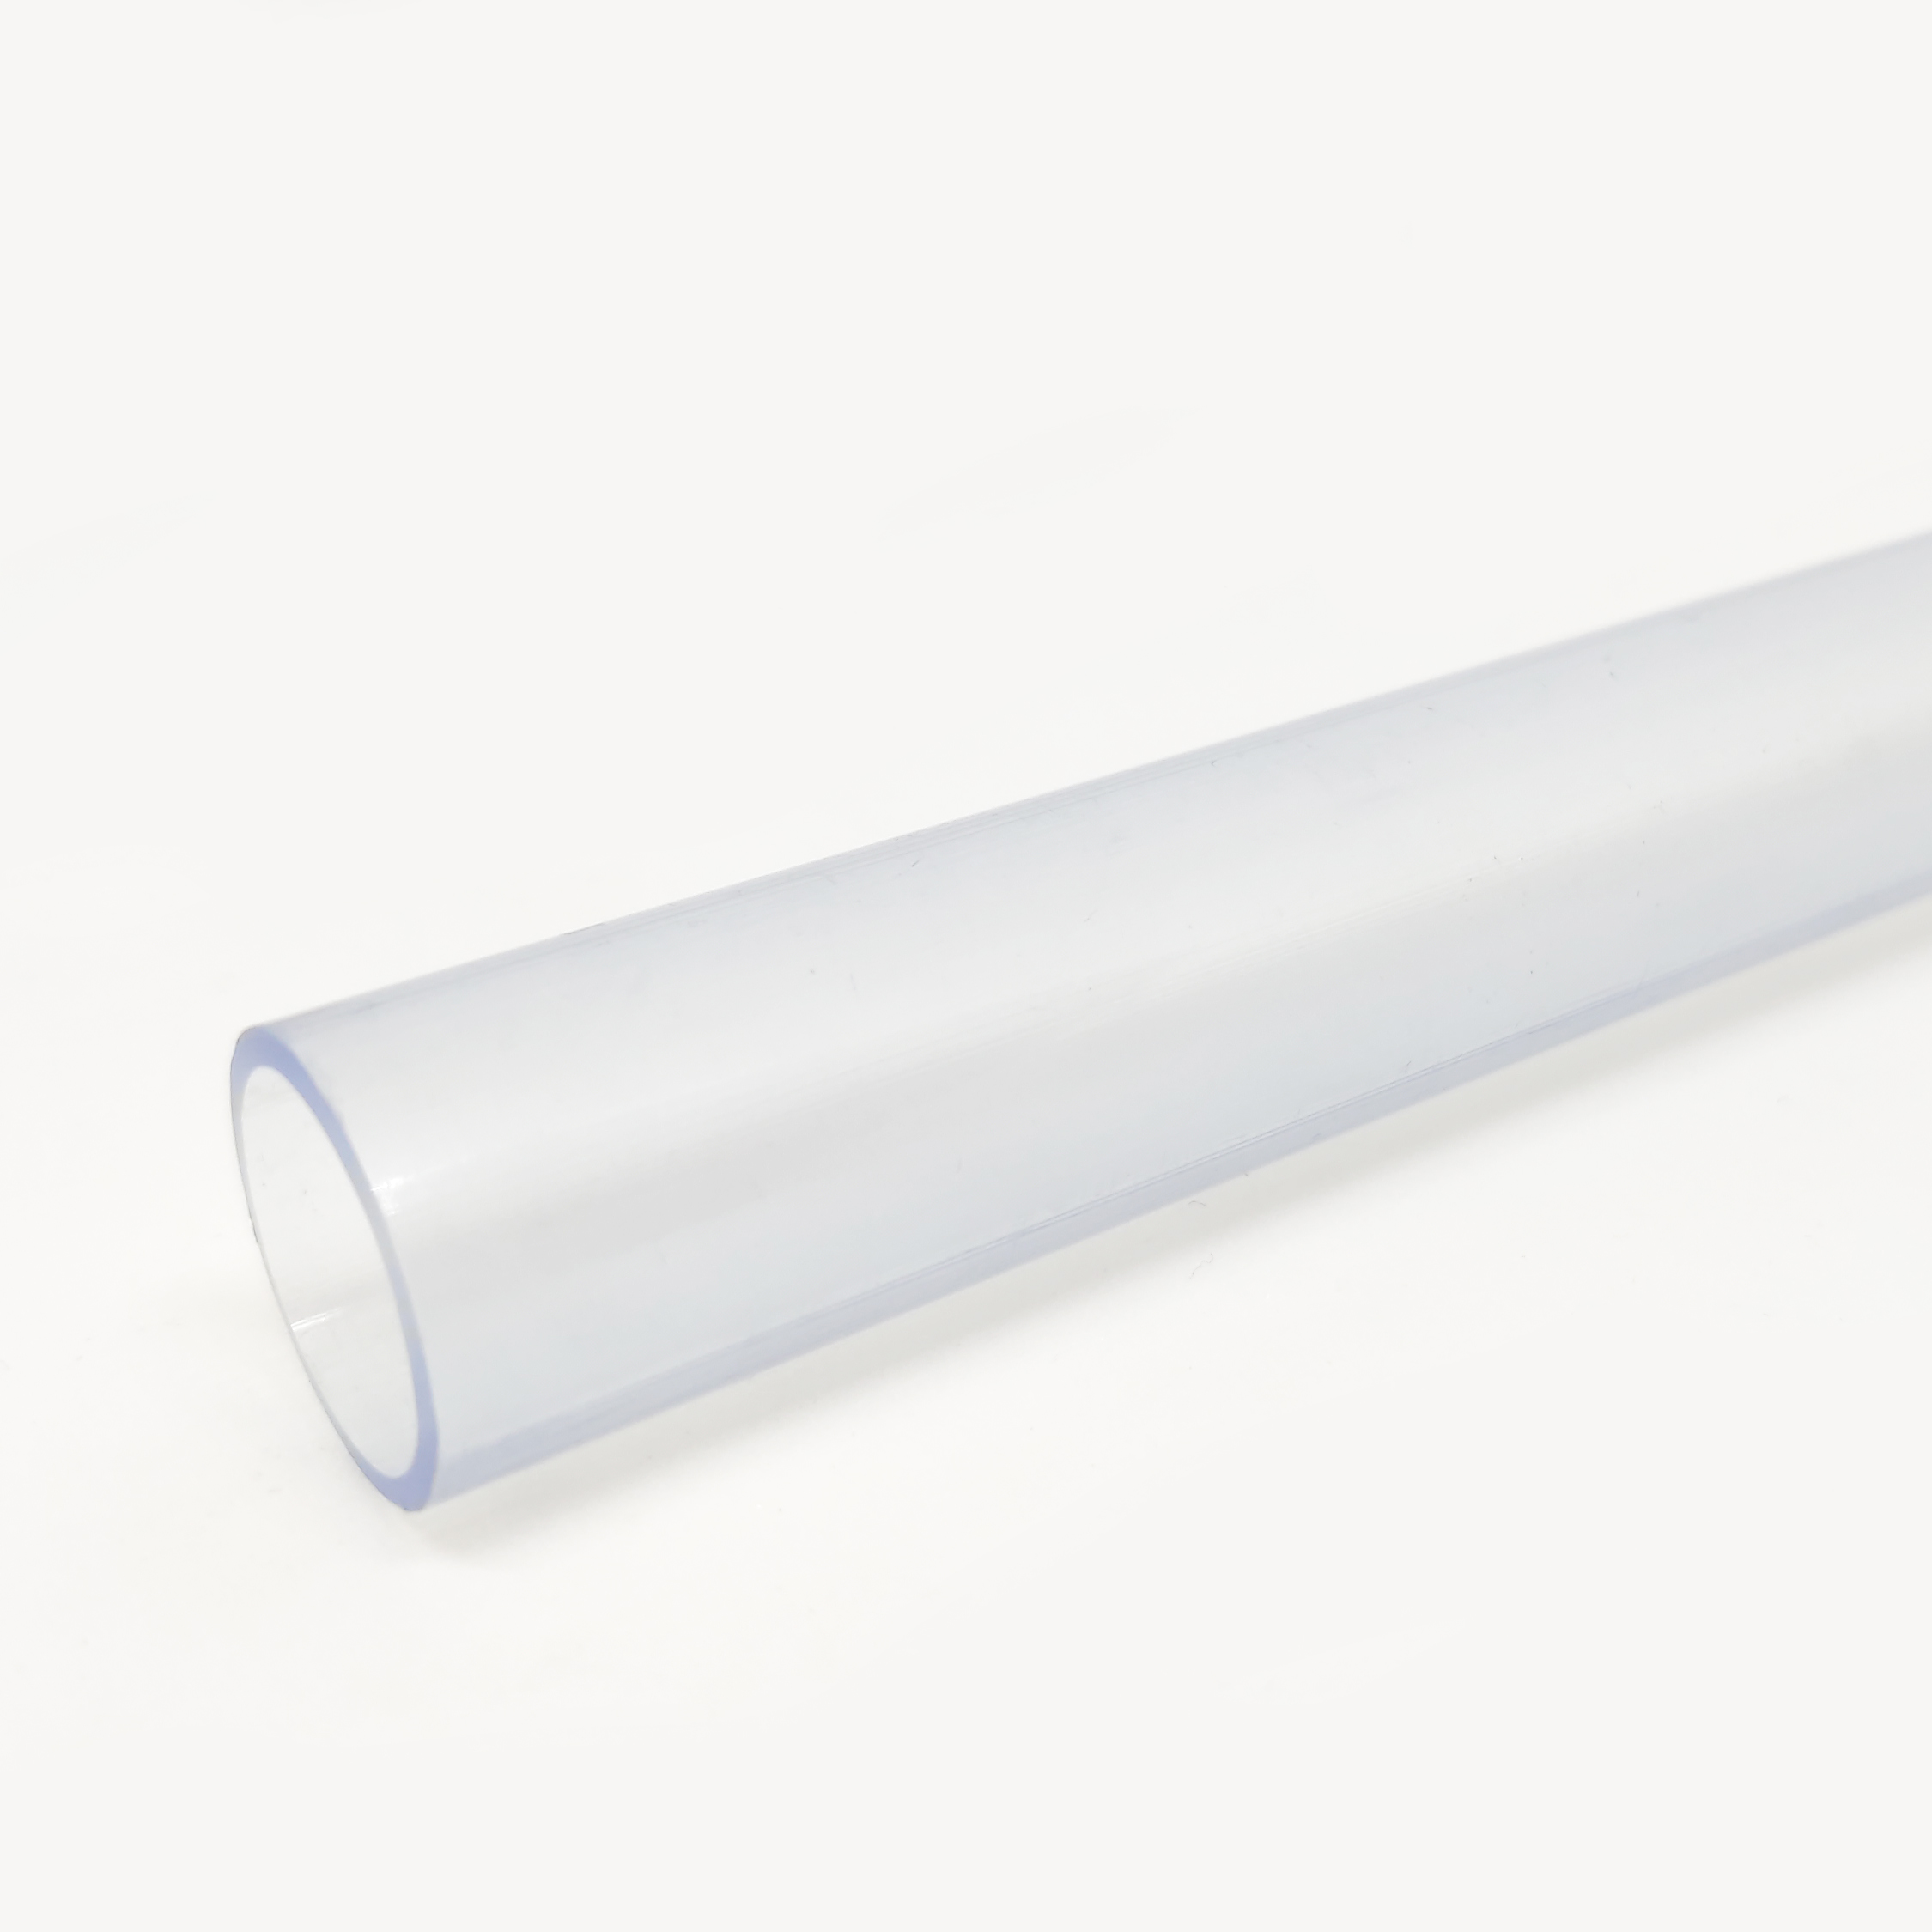 Tubo PVC encolar ø110mm 10 atmósferas